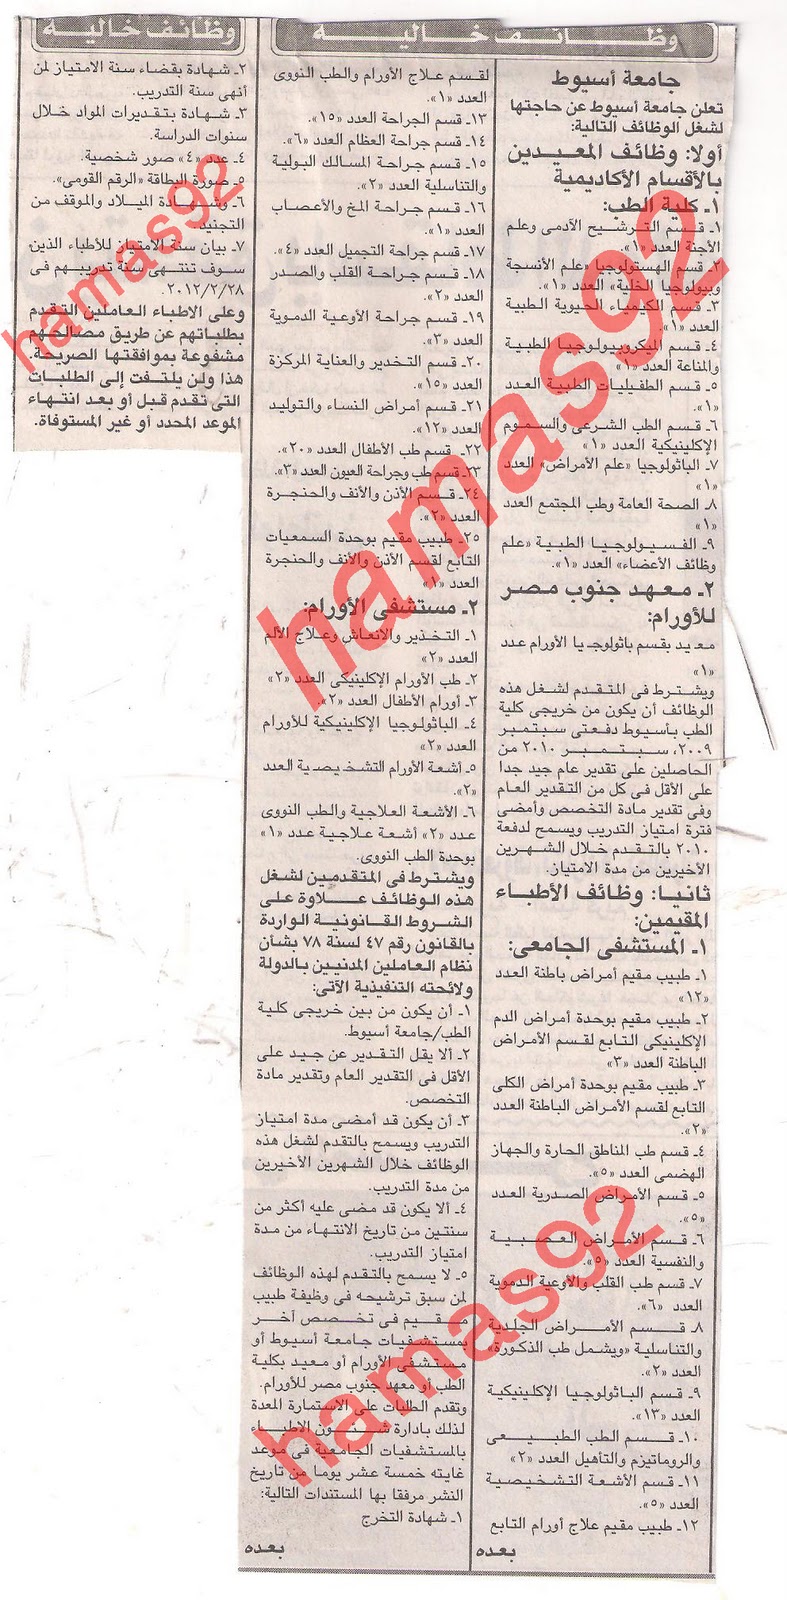 اعلانات وظائف جريدة الجمهورية الخميس 5 يناير 2012  Picture+002